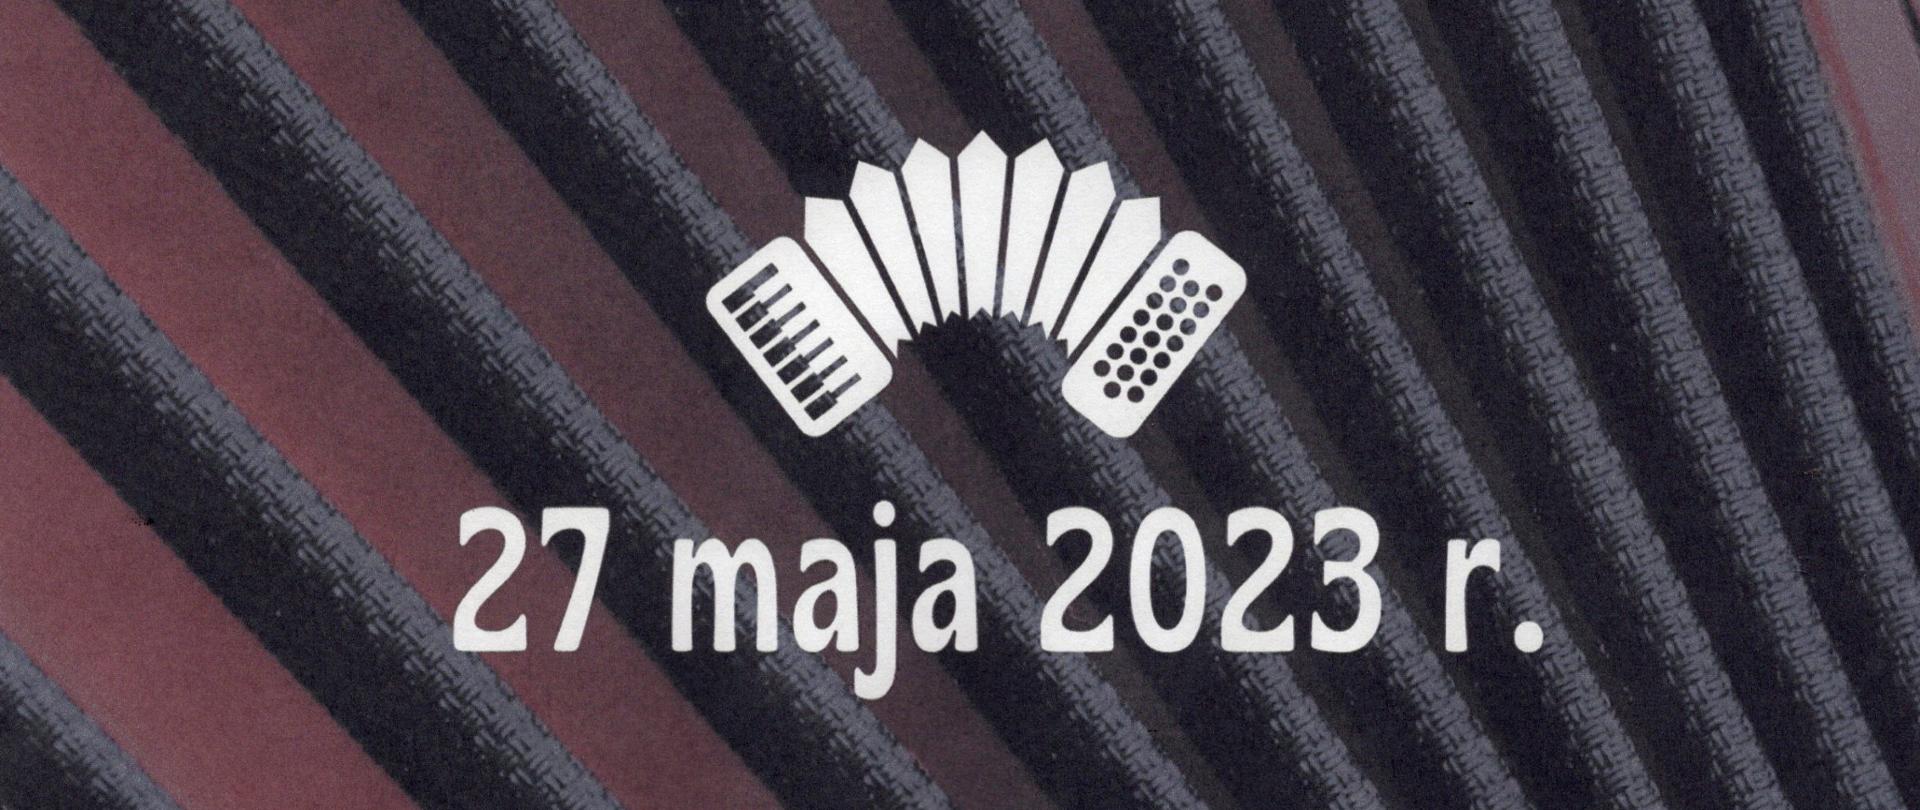 Zdjęcie przedstawia grafikę akordeonu na tle miecha instrumentu oraz datę 27 maja 2023 r.